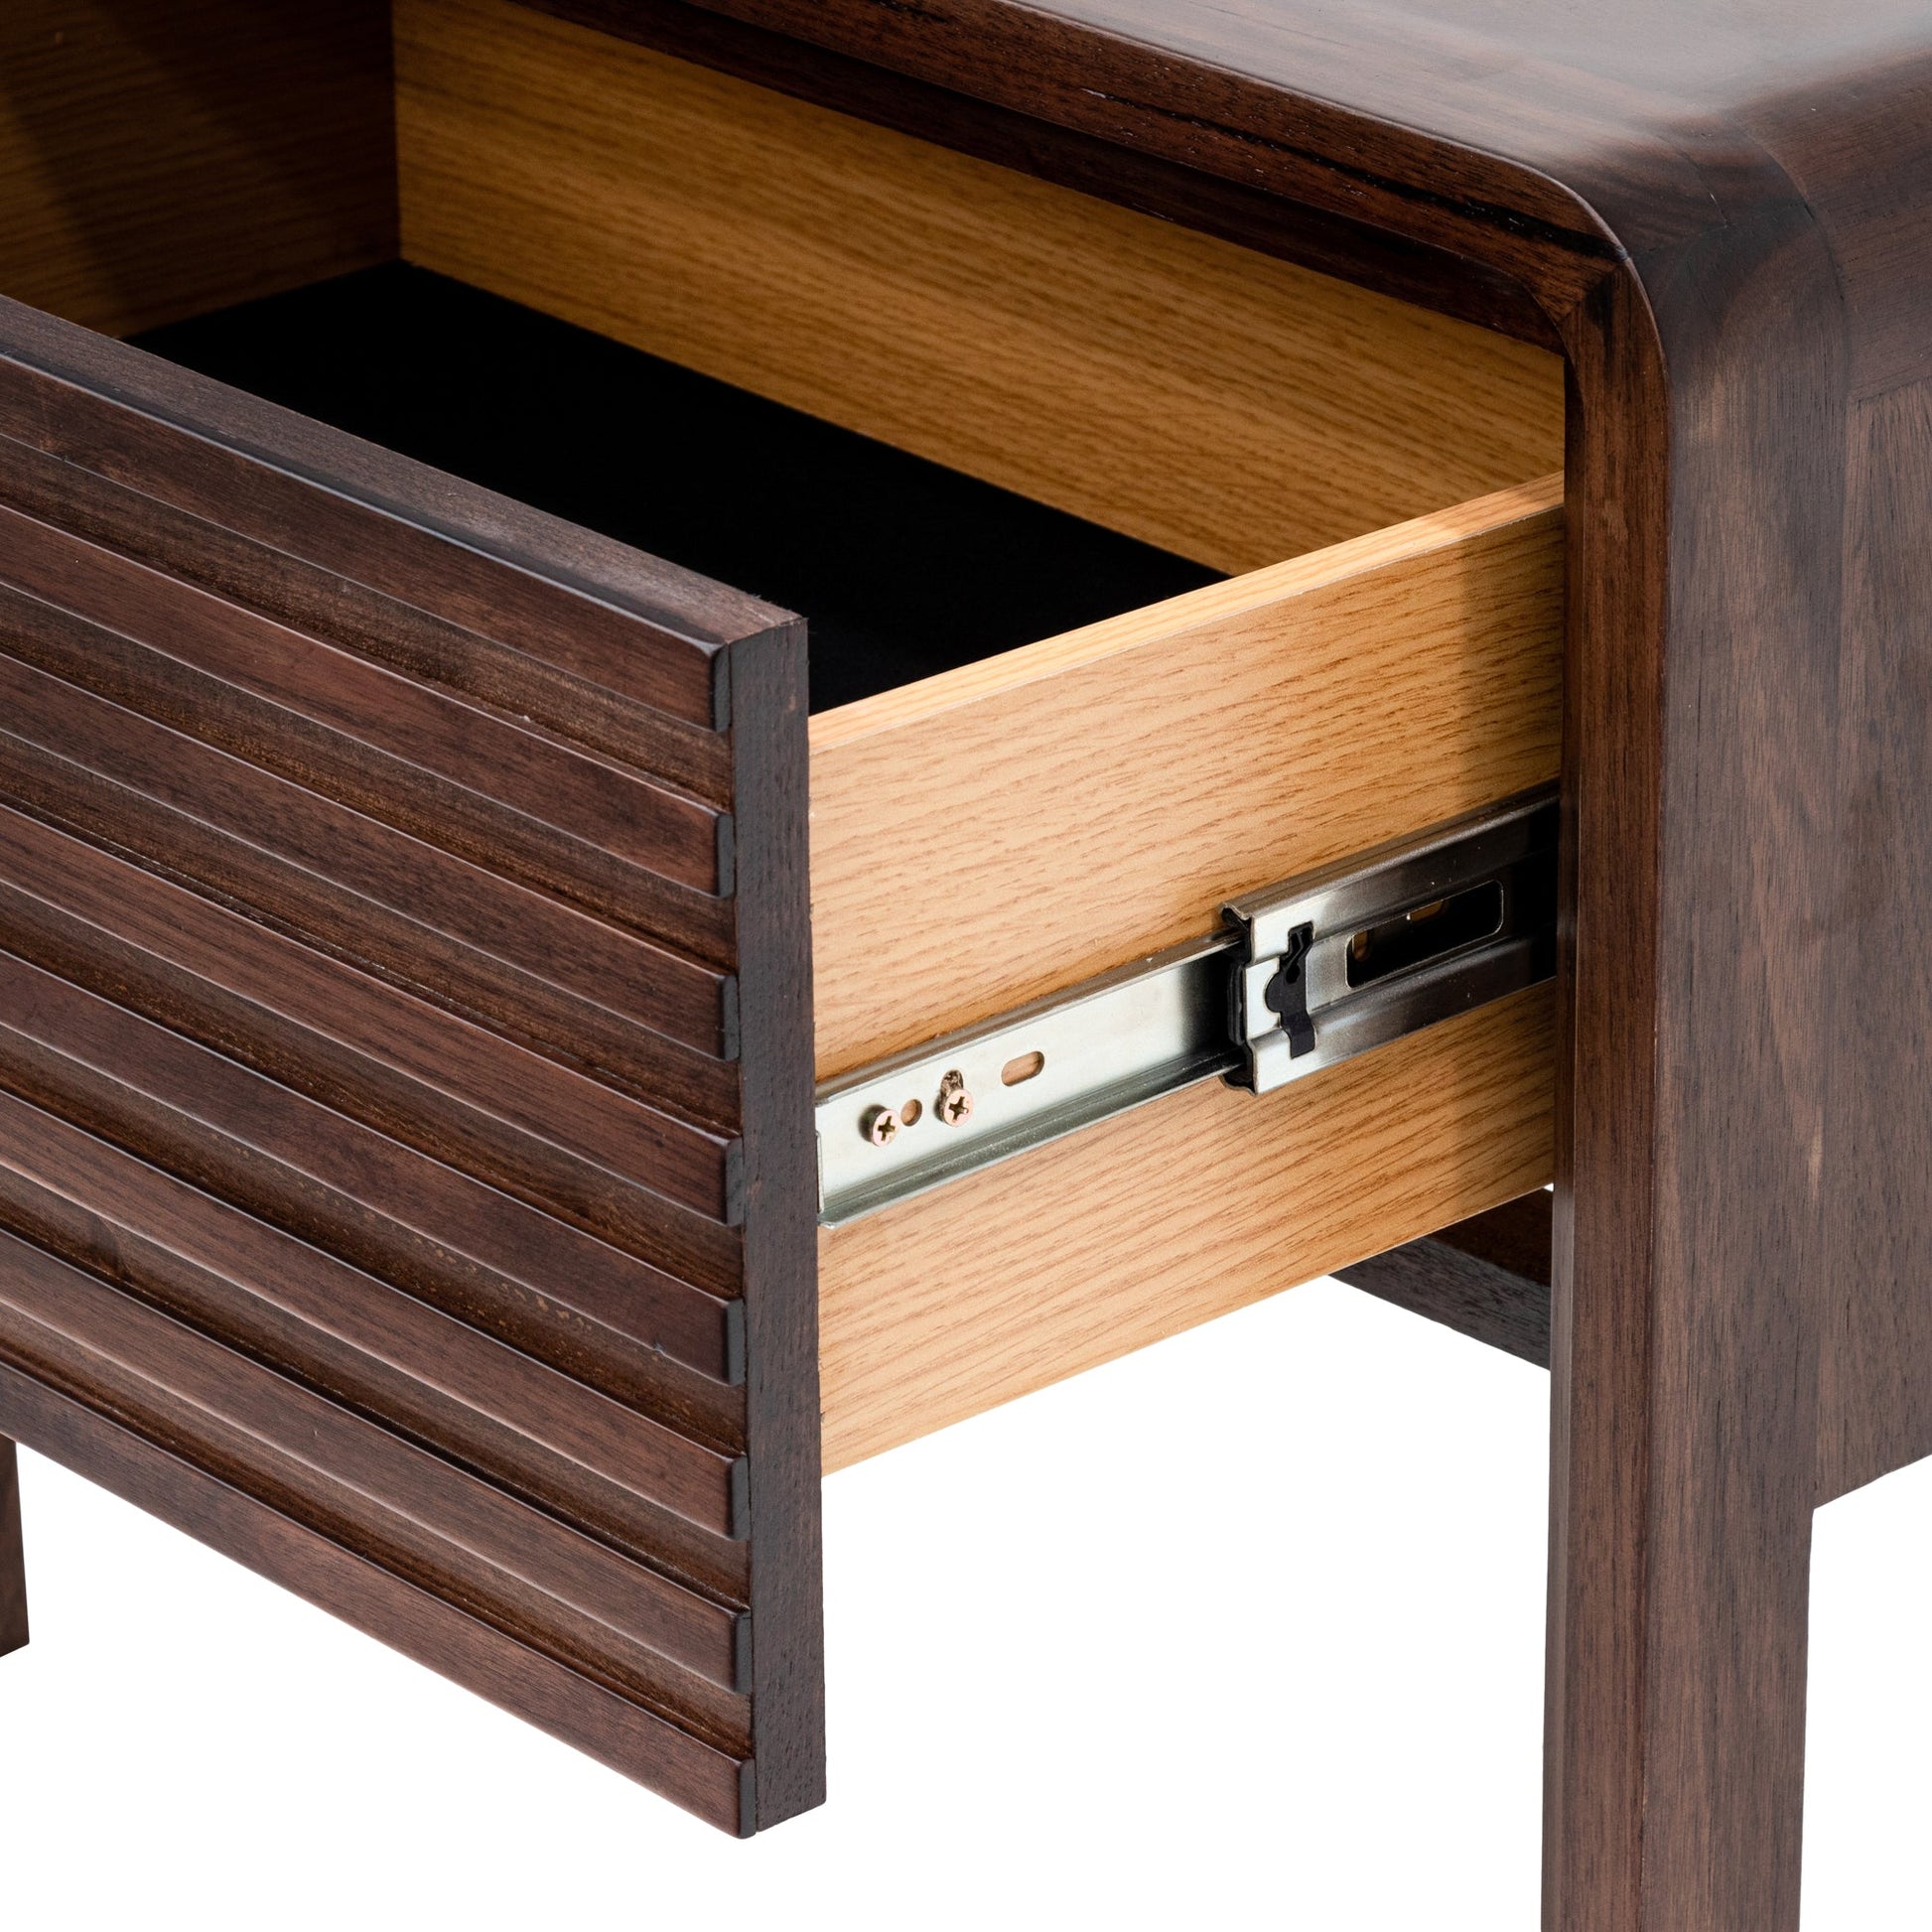 Single Drawer Bedside Table - Walnut-Bedside Table-Calibre-Prime Furniture